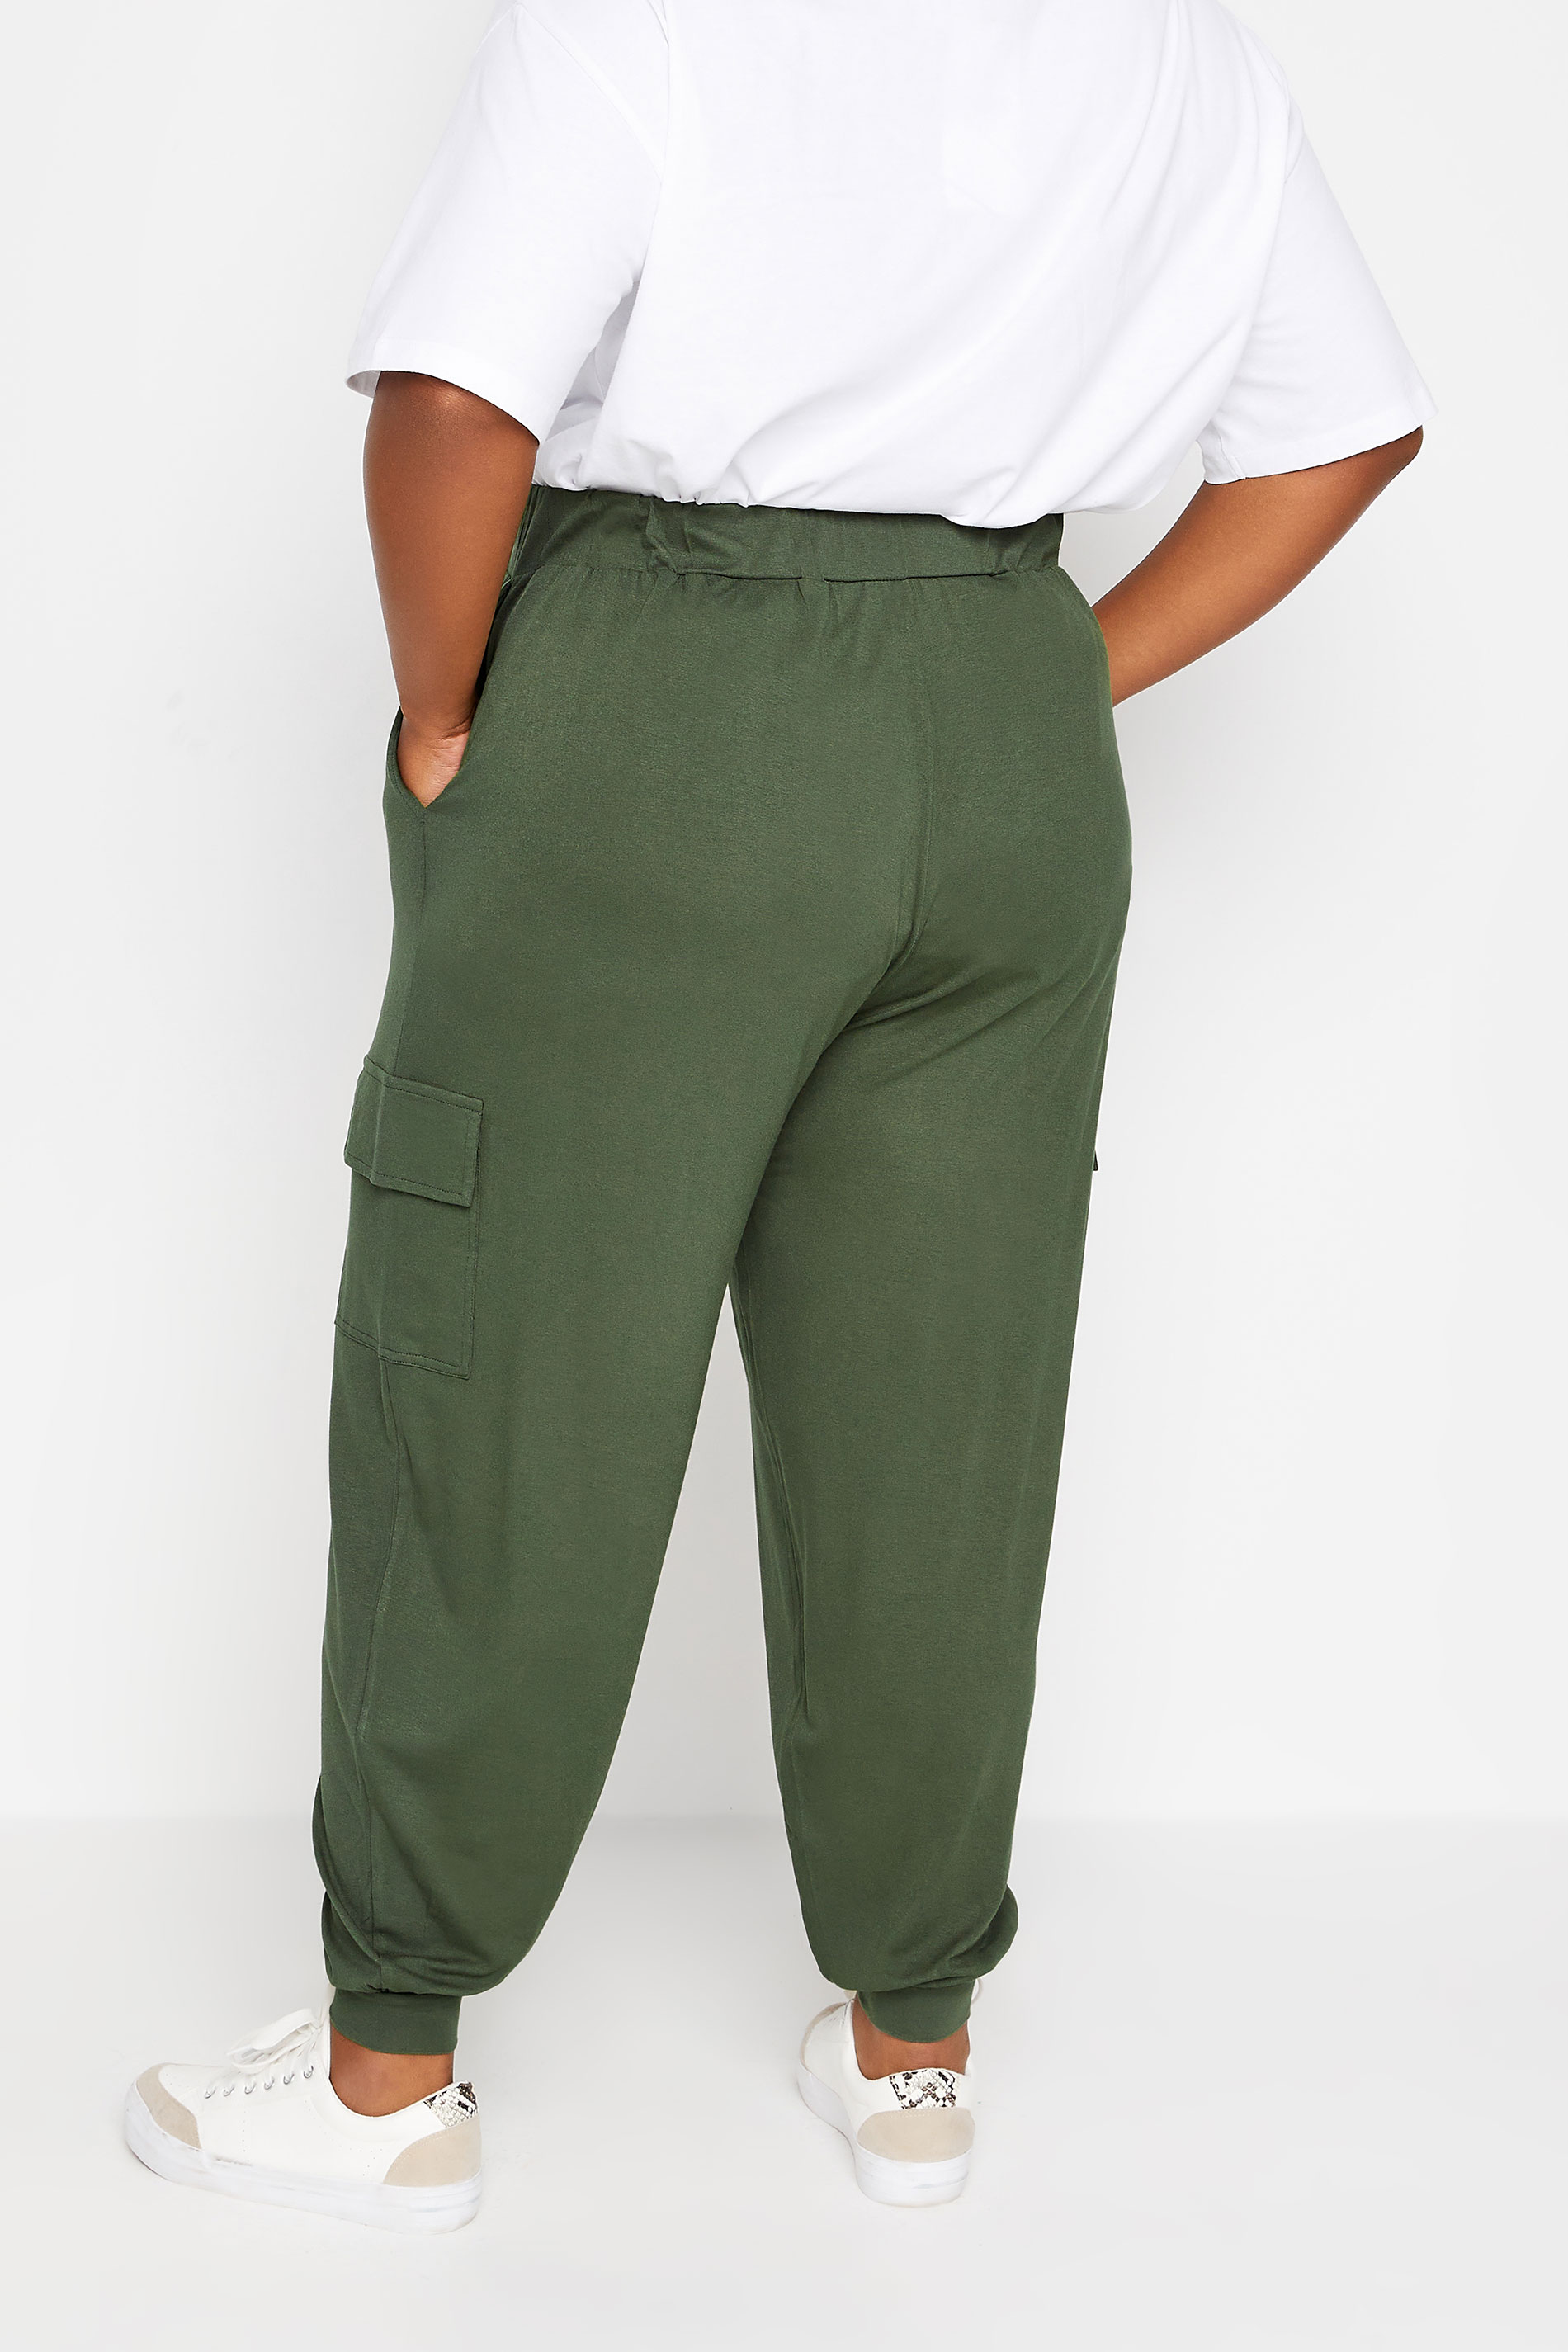 YOURS Plus Size Khaki Green Cargo Pocket Harem Joggers | Yours Clothing 2